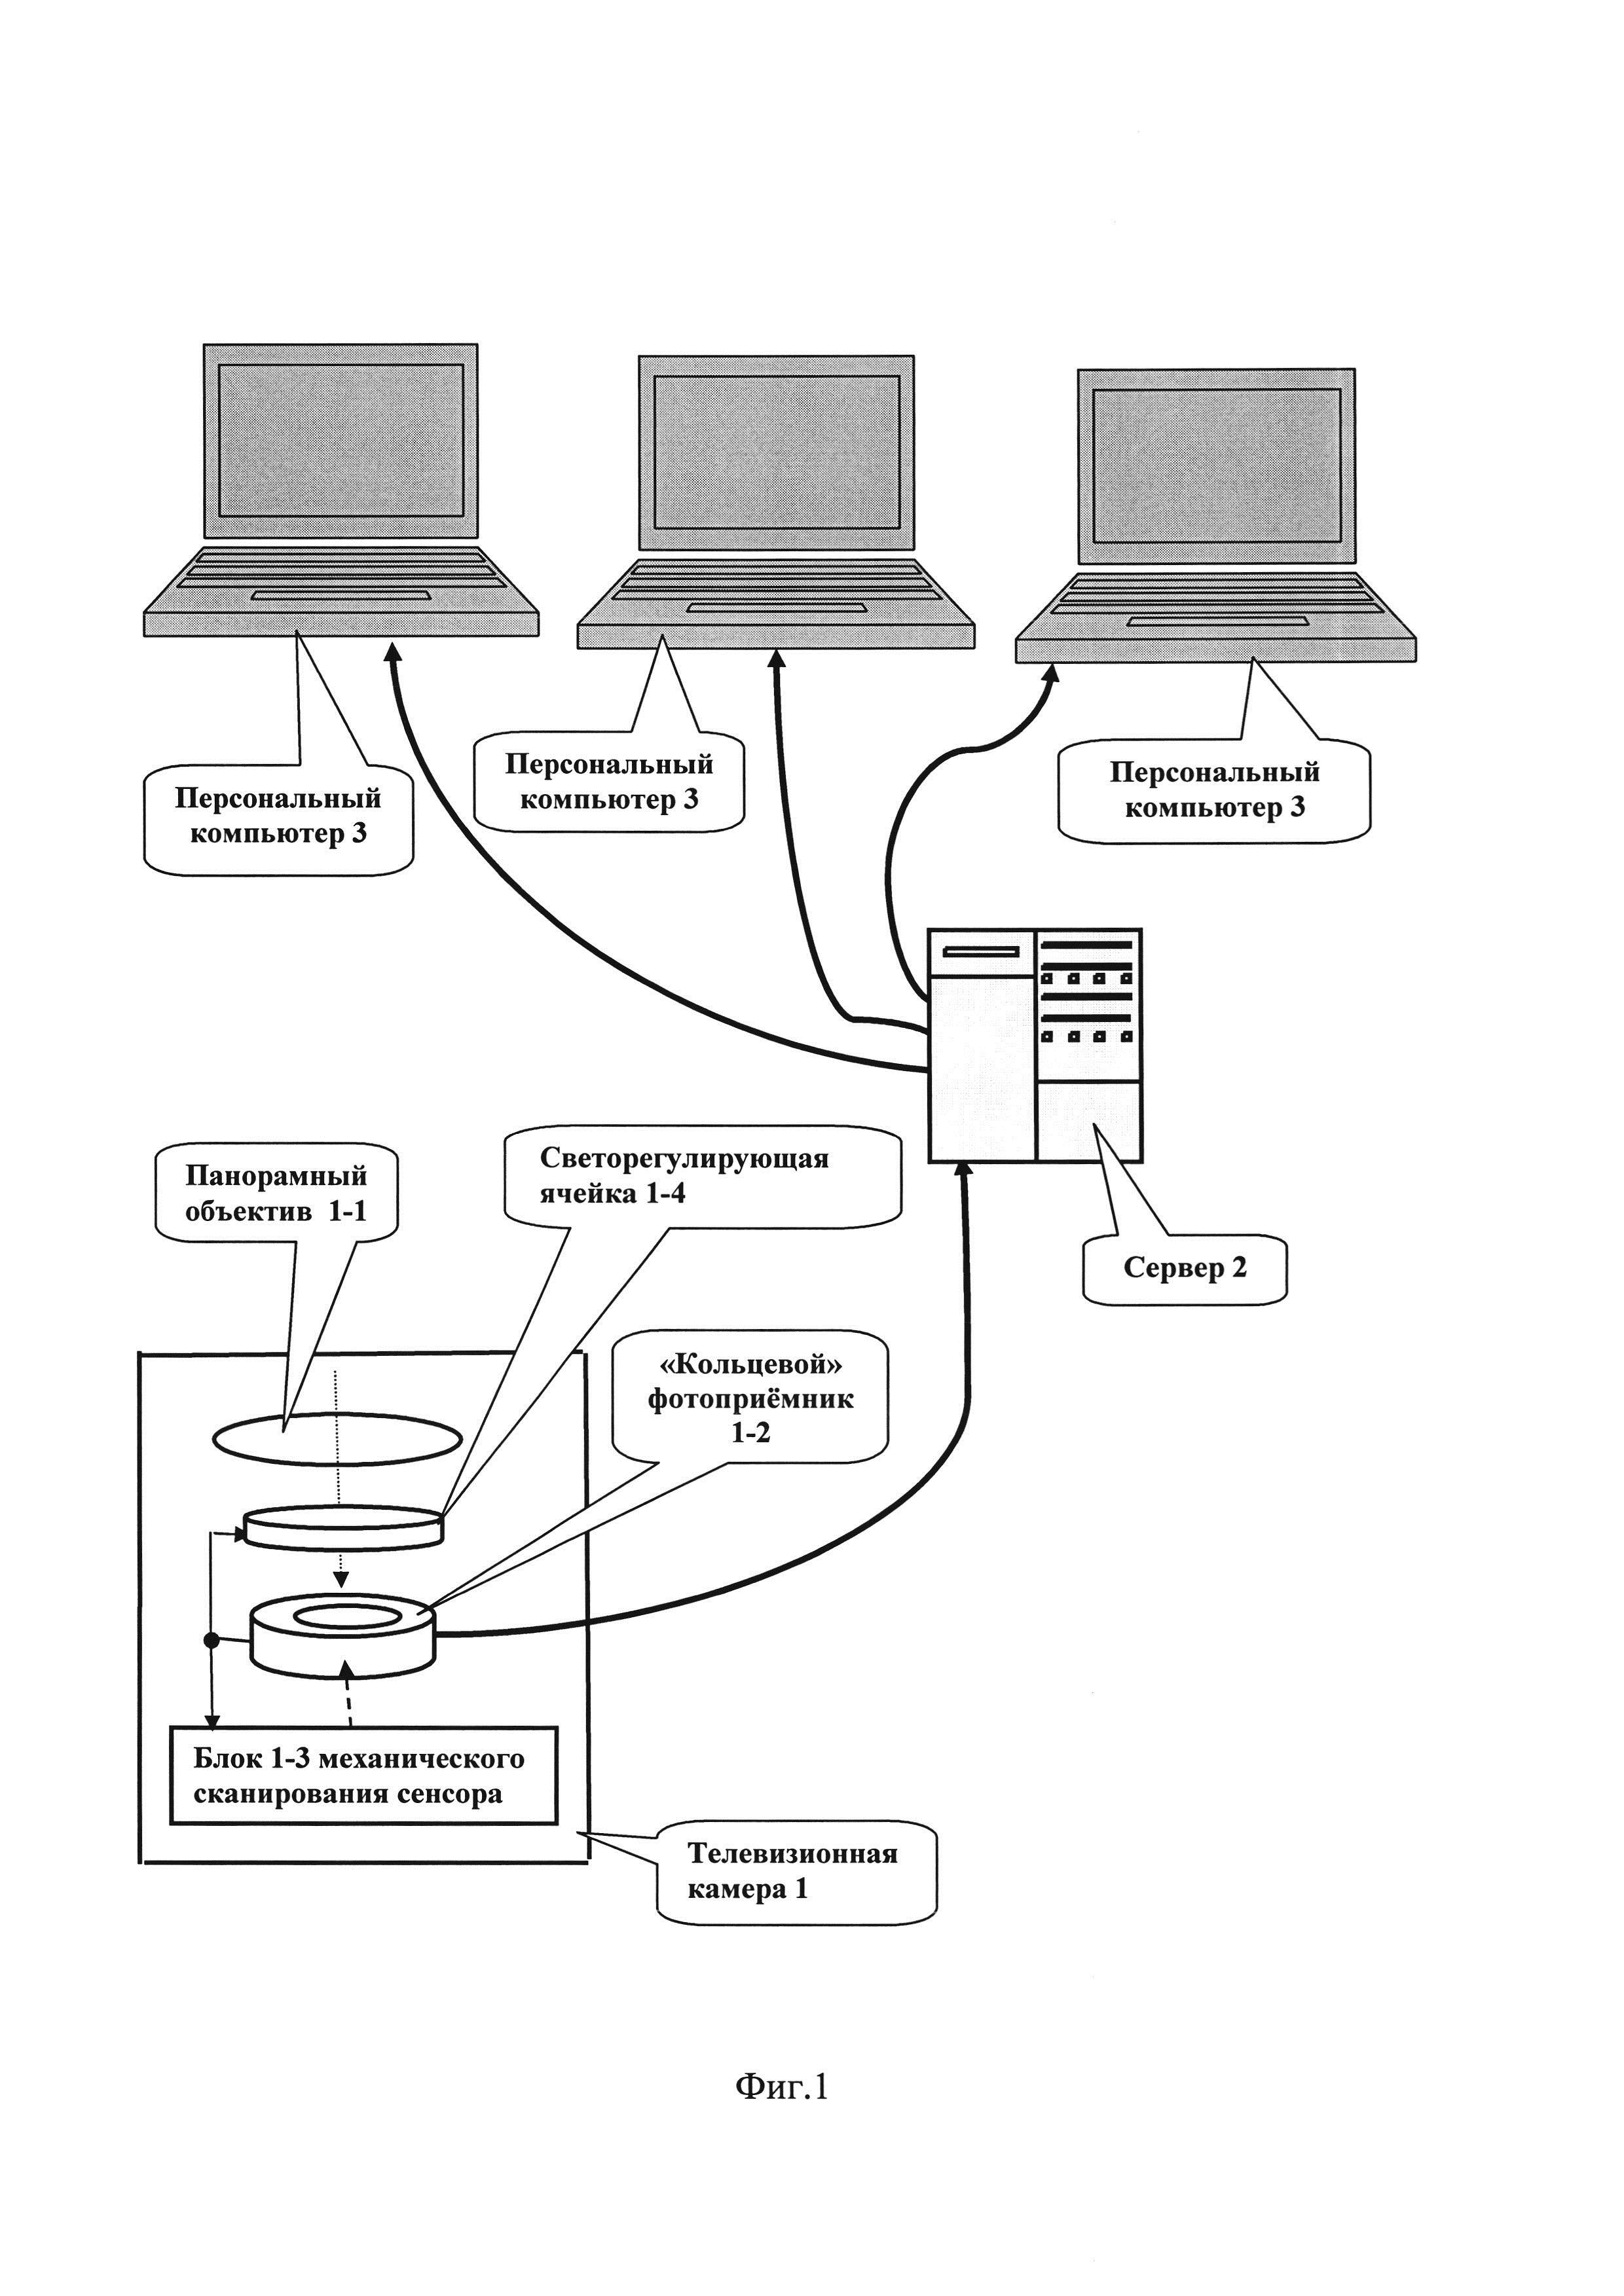 Устройство компьютерной системы для панорамного сканирования монохромного изображения